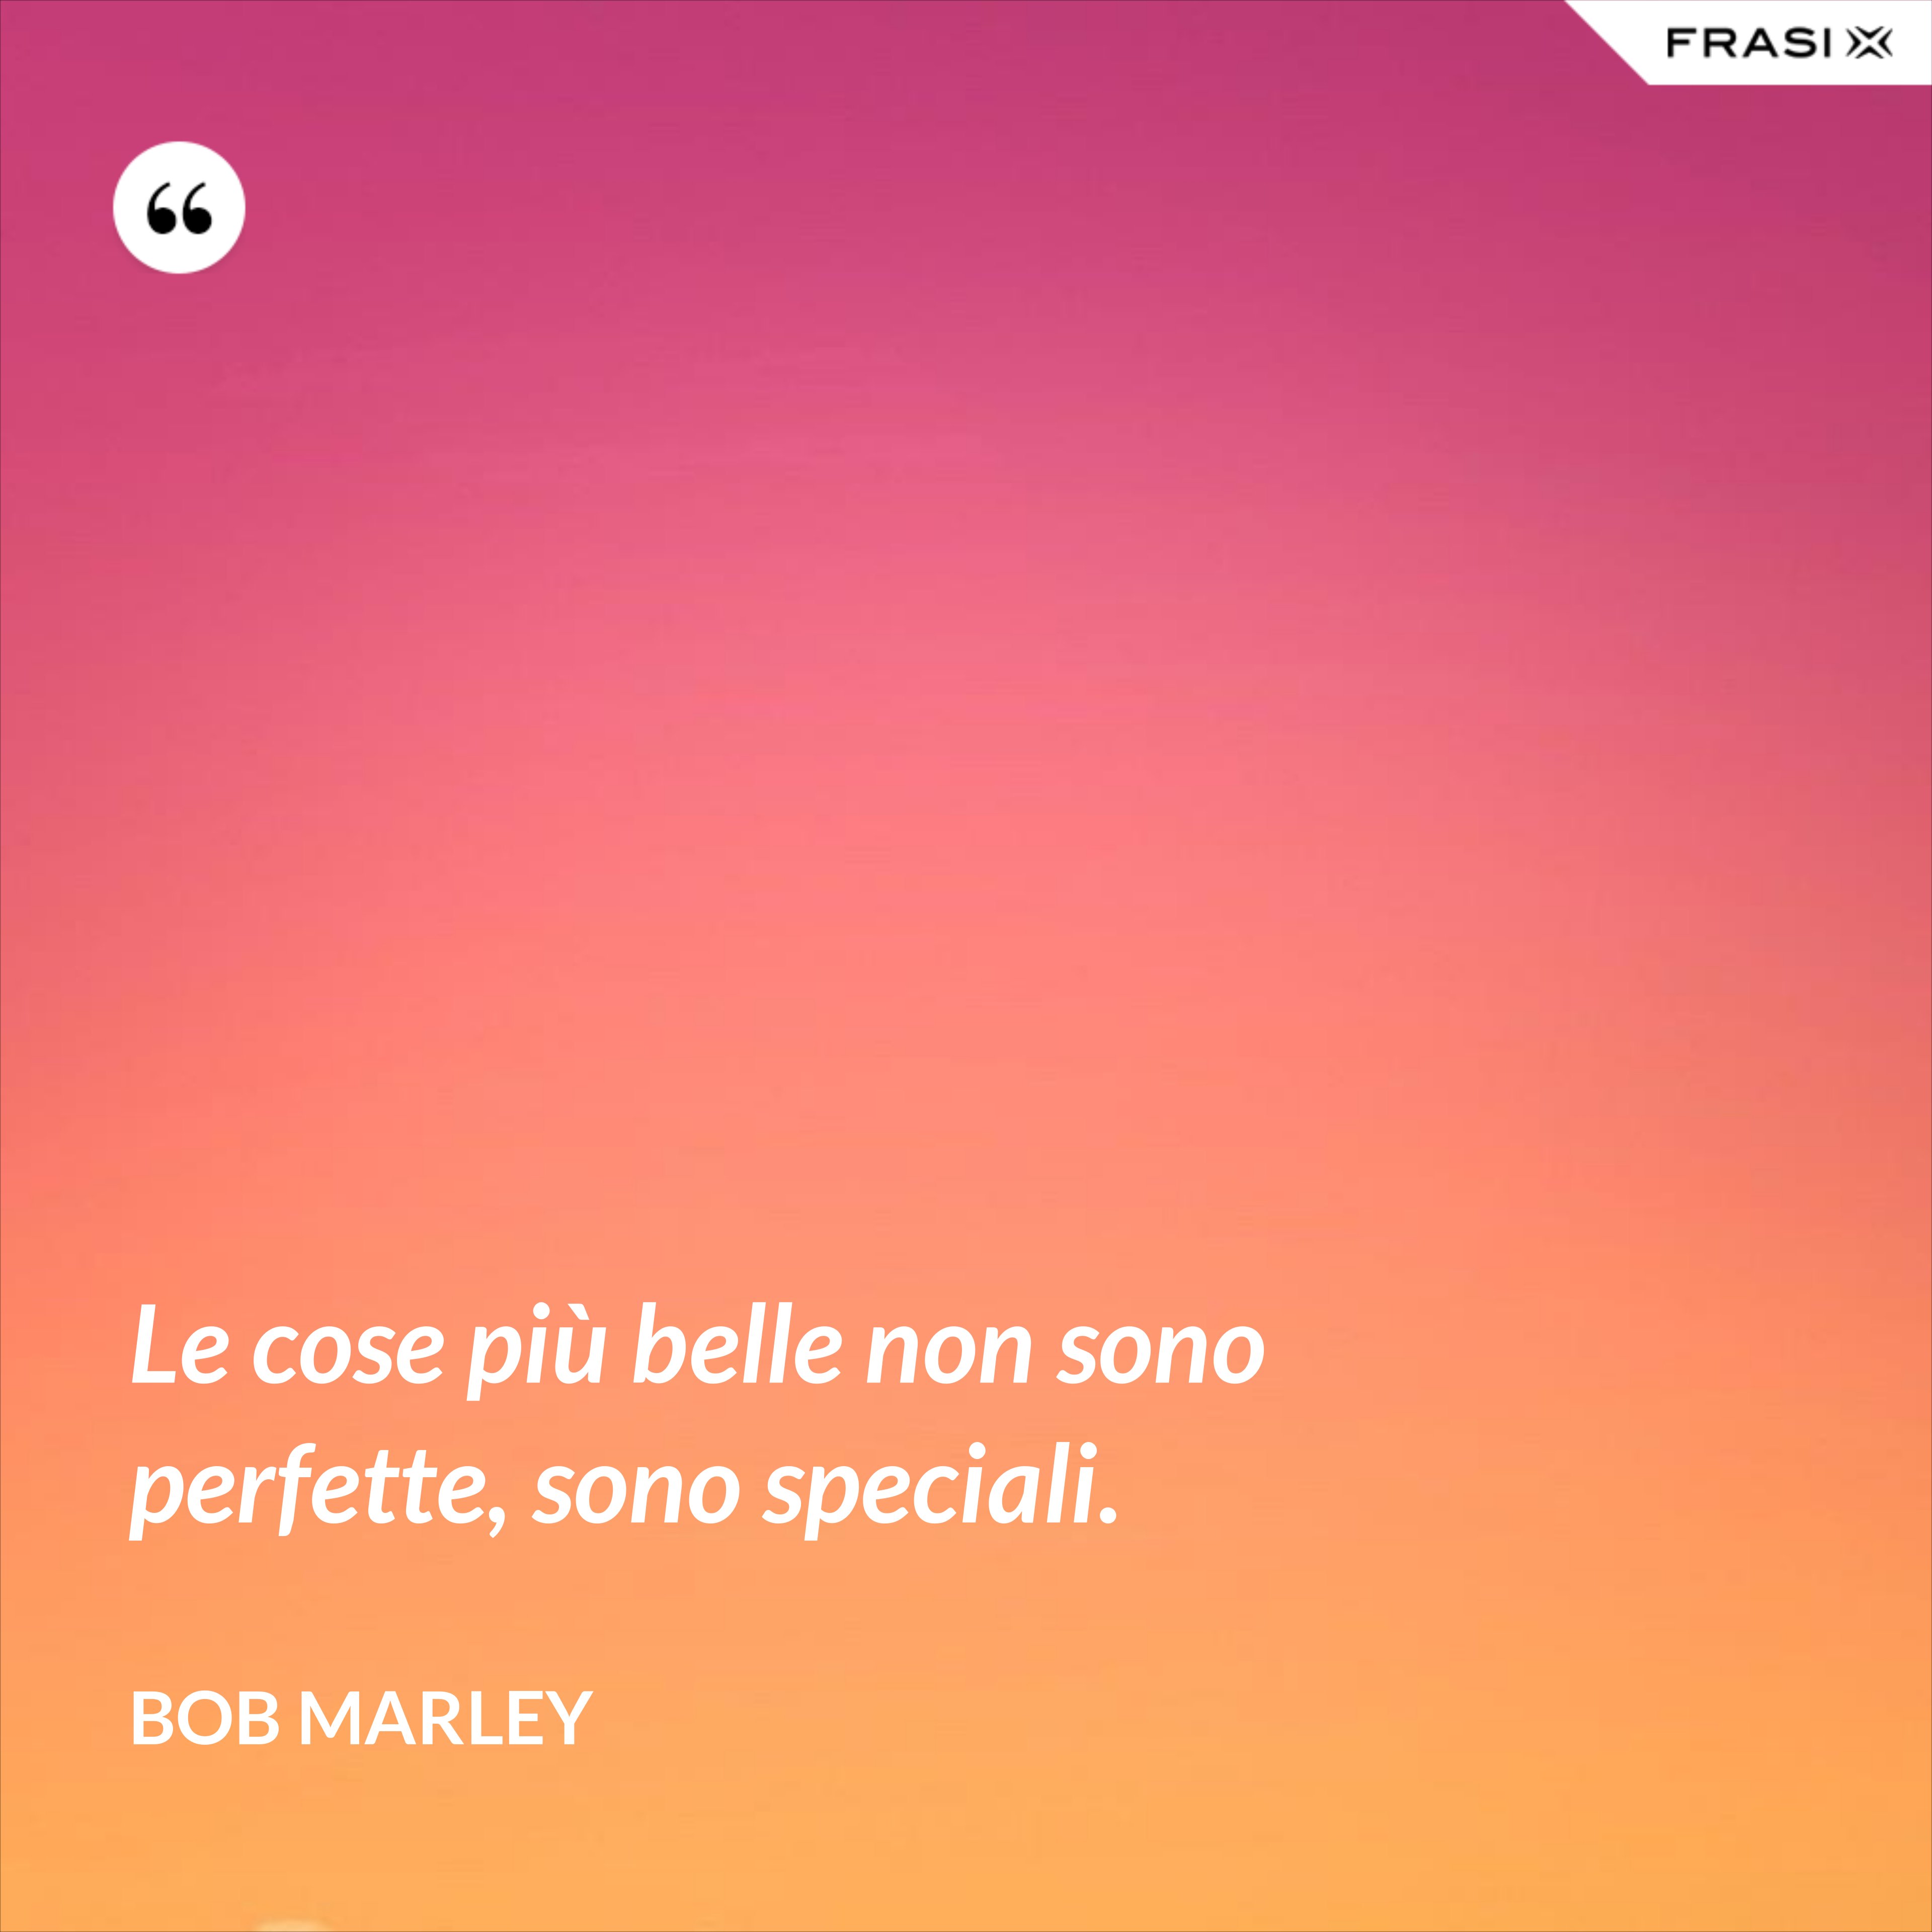 Le cose più belle non sono perfette, sono speciali. - Bob Marley